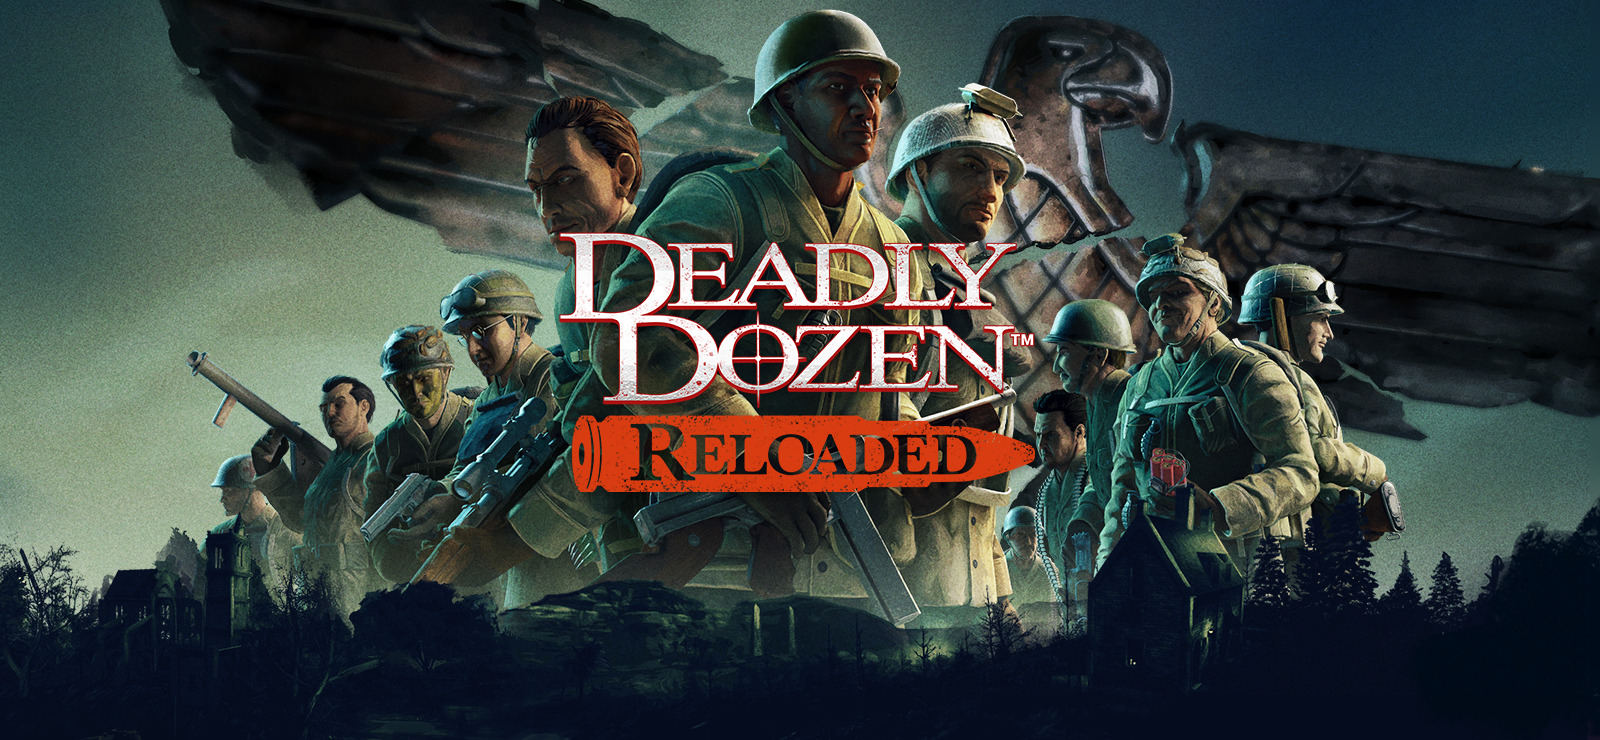 Deadly Dozen Reloaded on GOG.com